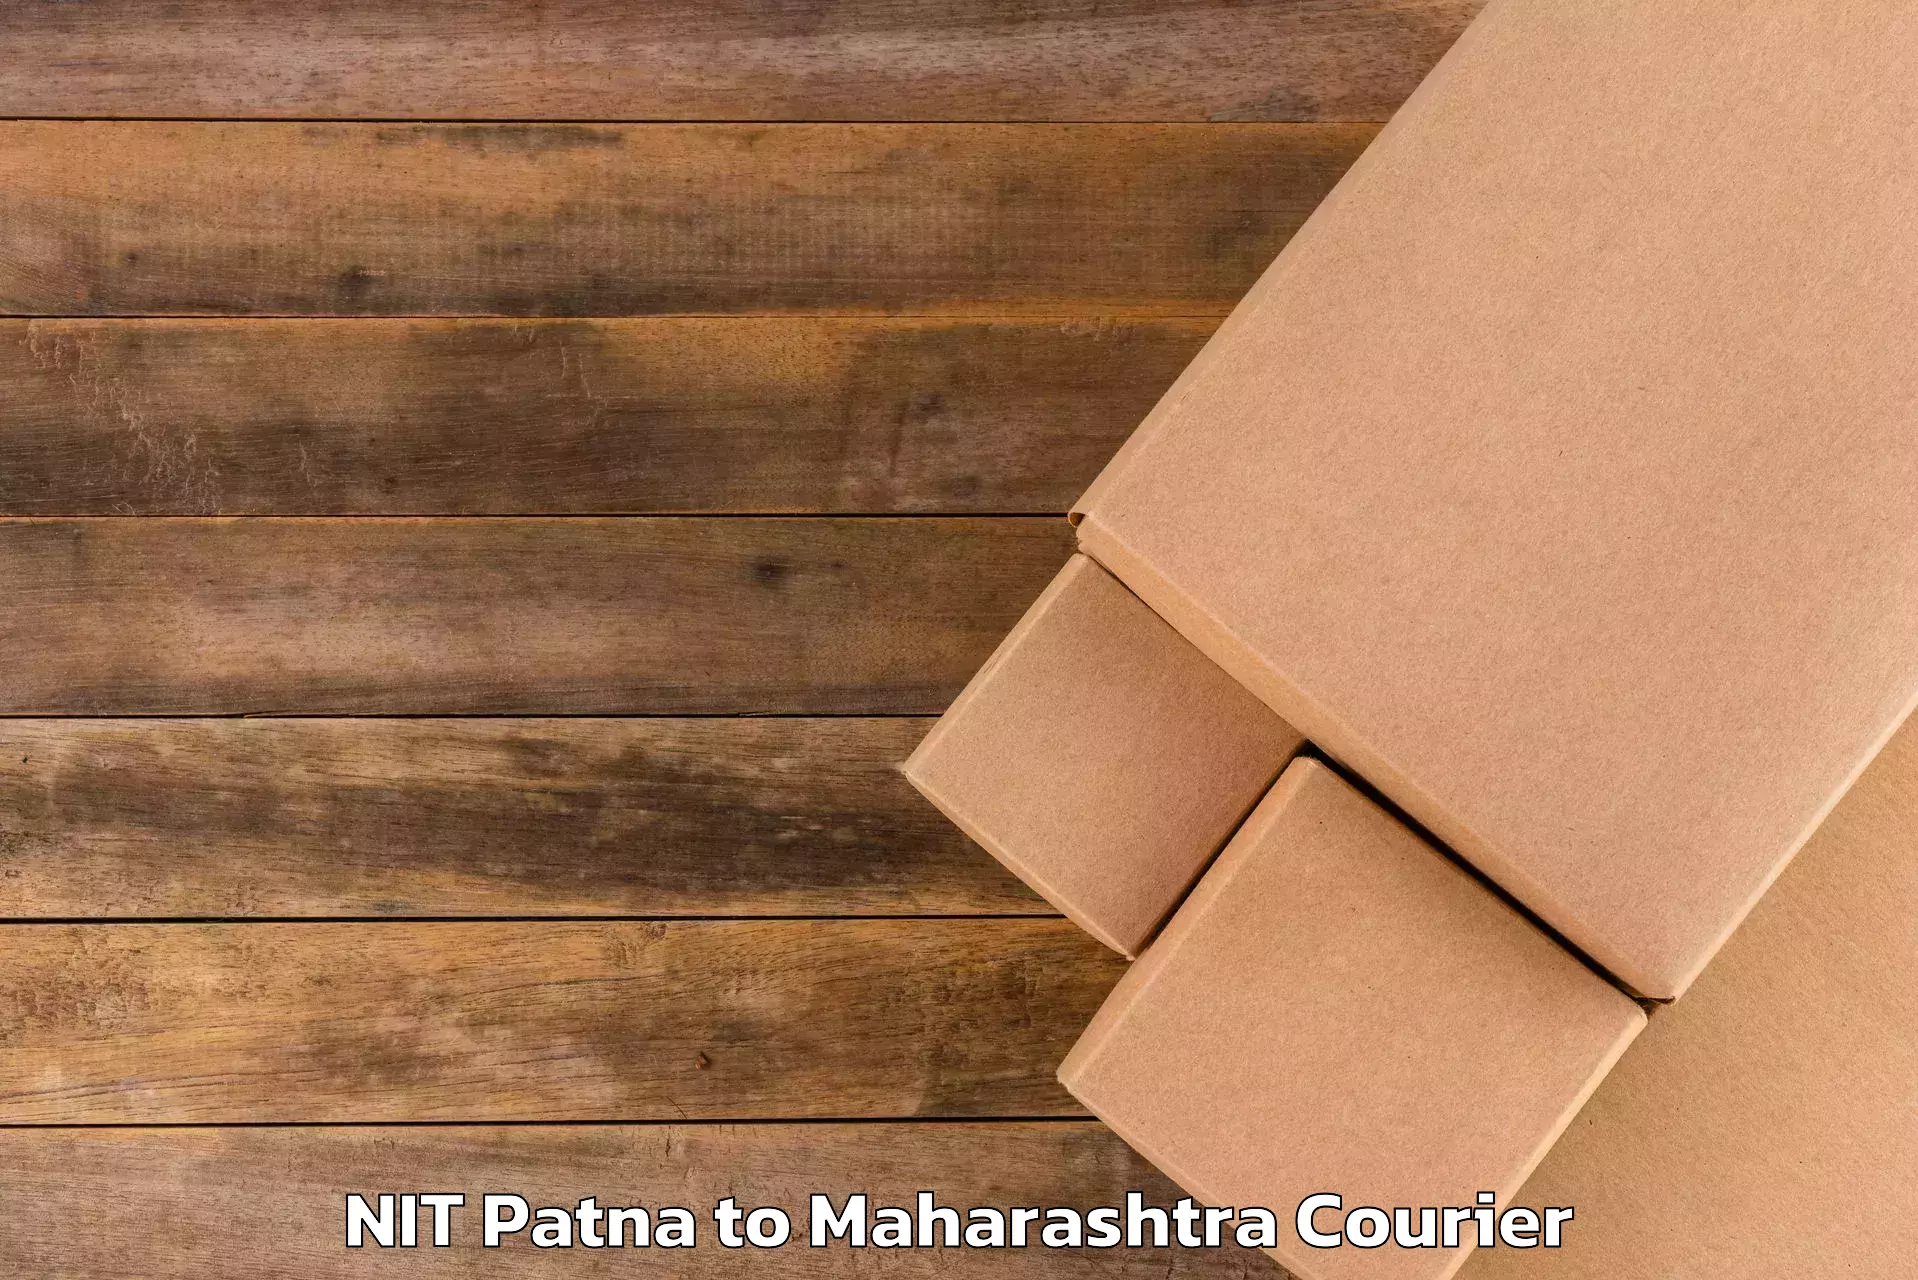 Automated luggage transport NIT Patna to Maharashtra